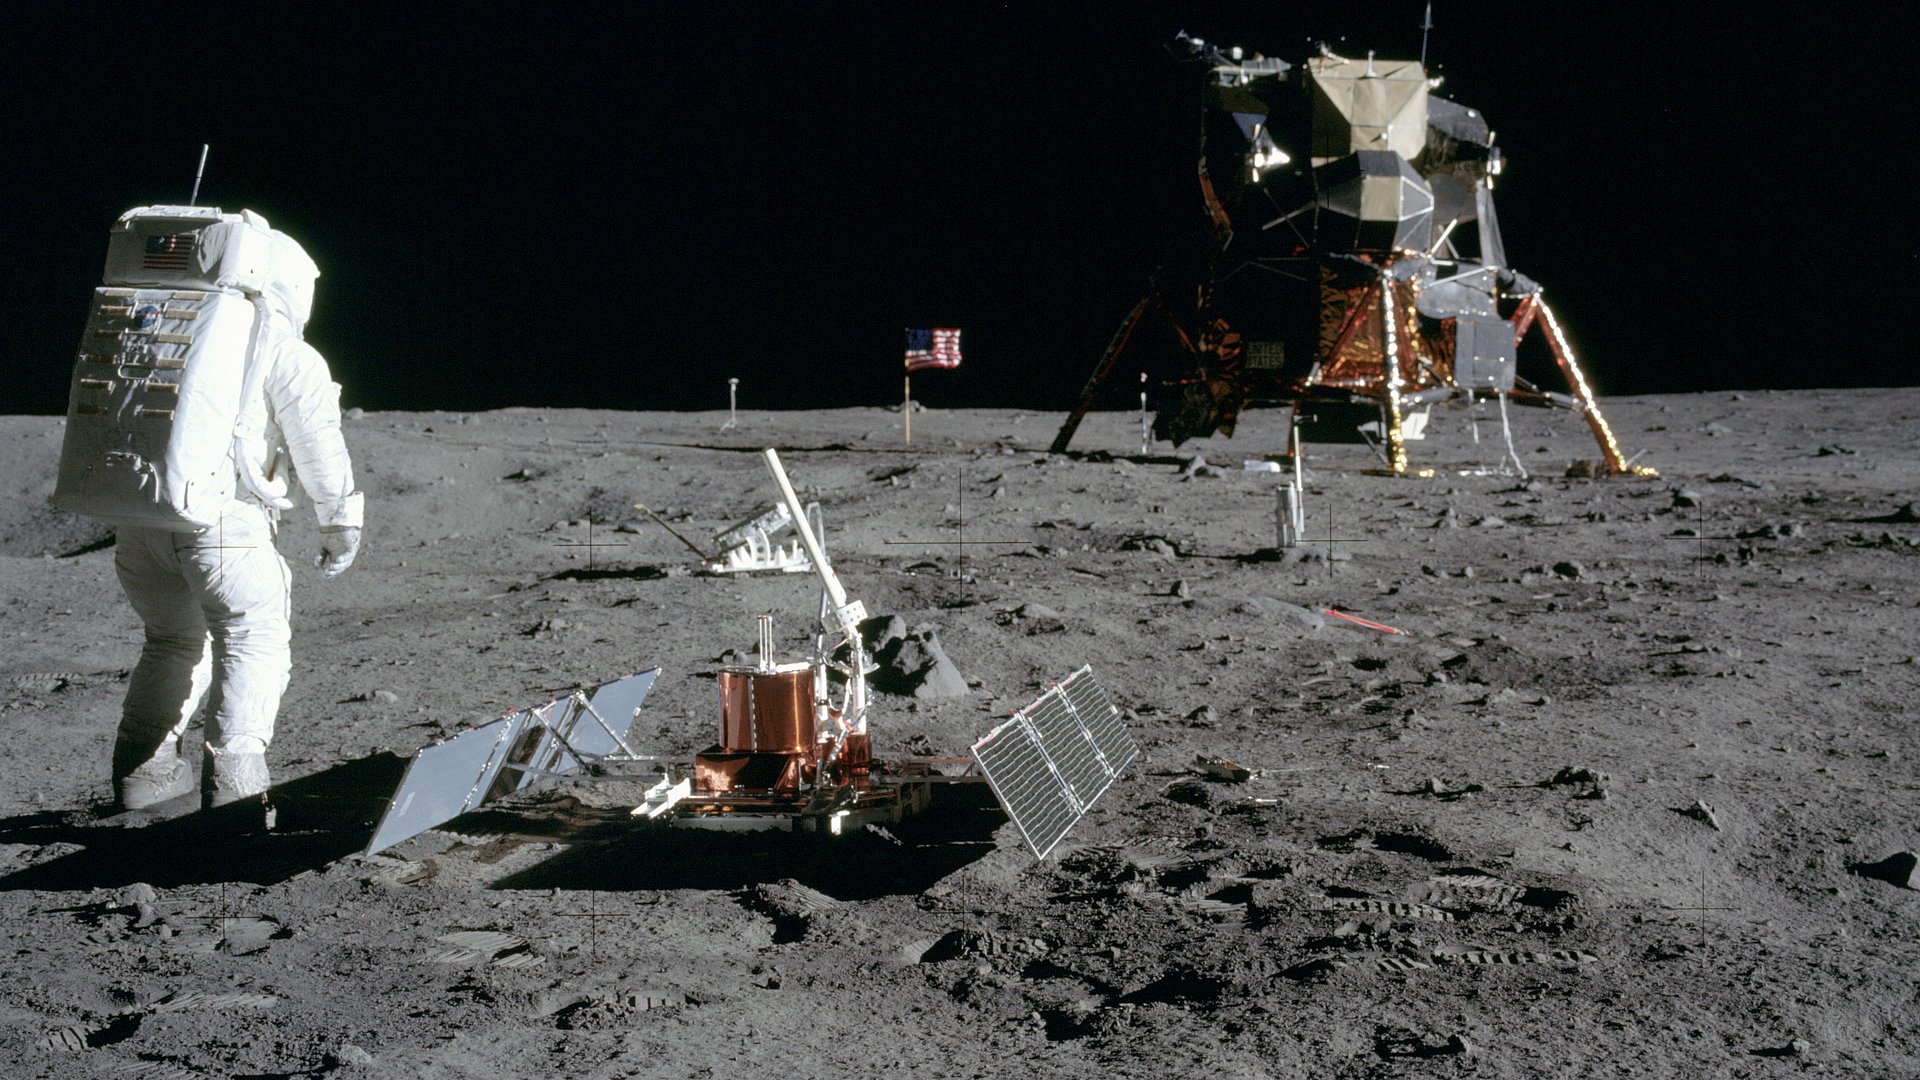 Zu sehen ist Astronaut Buzz Aldrin, der gerade das Seismometer aufgebaut hat (vorne). Dahinter steht der Laser Ranging Retro-Reflector (LR-3).